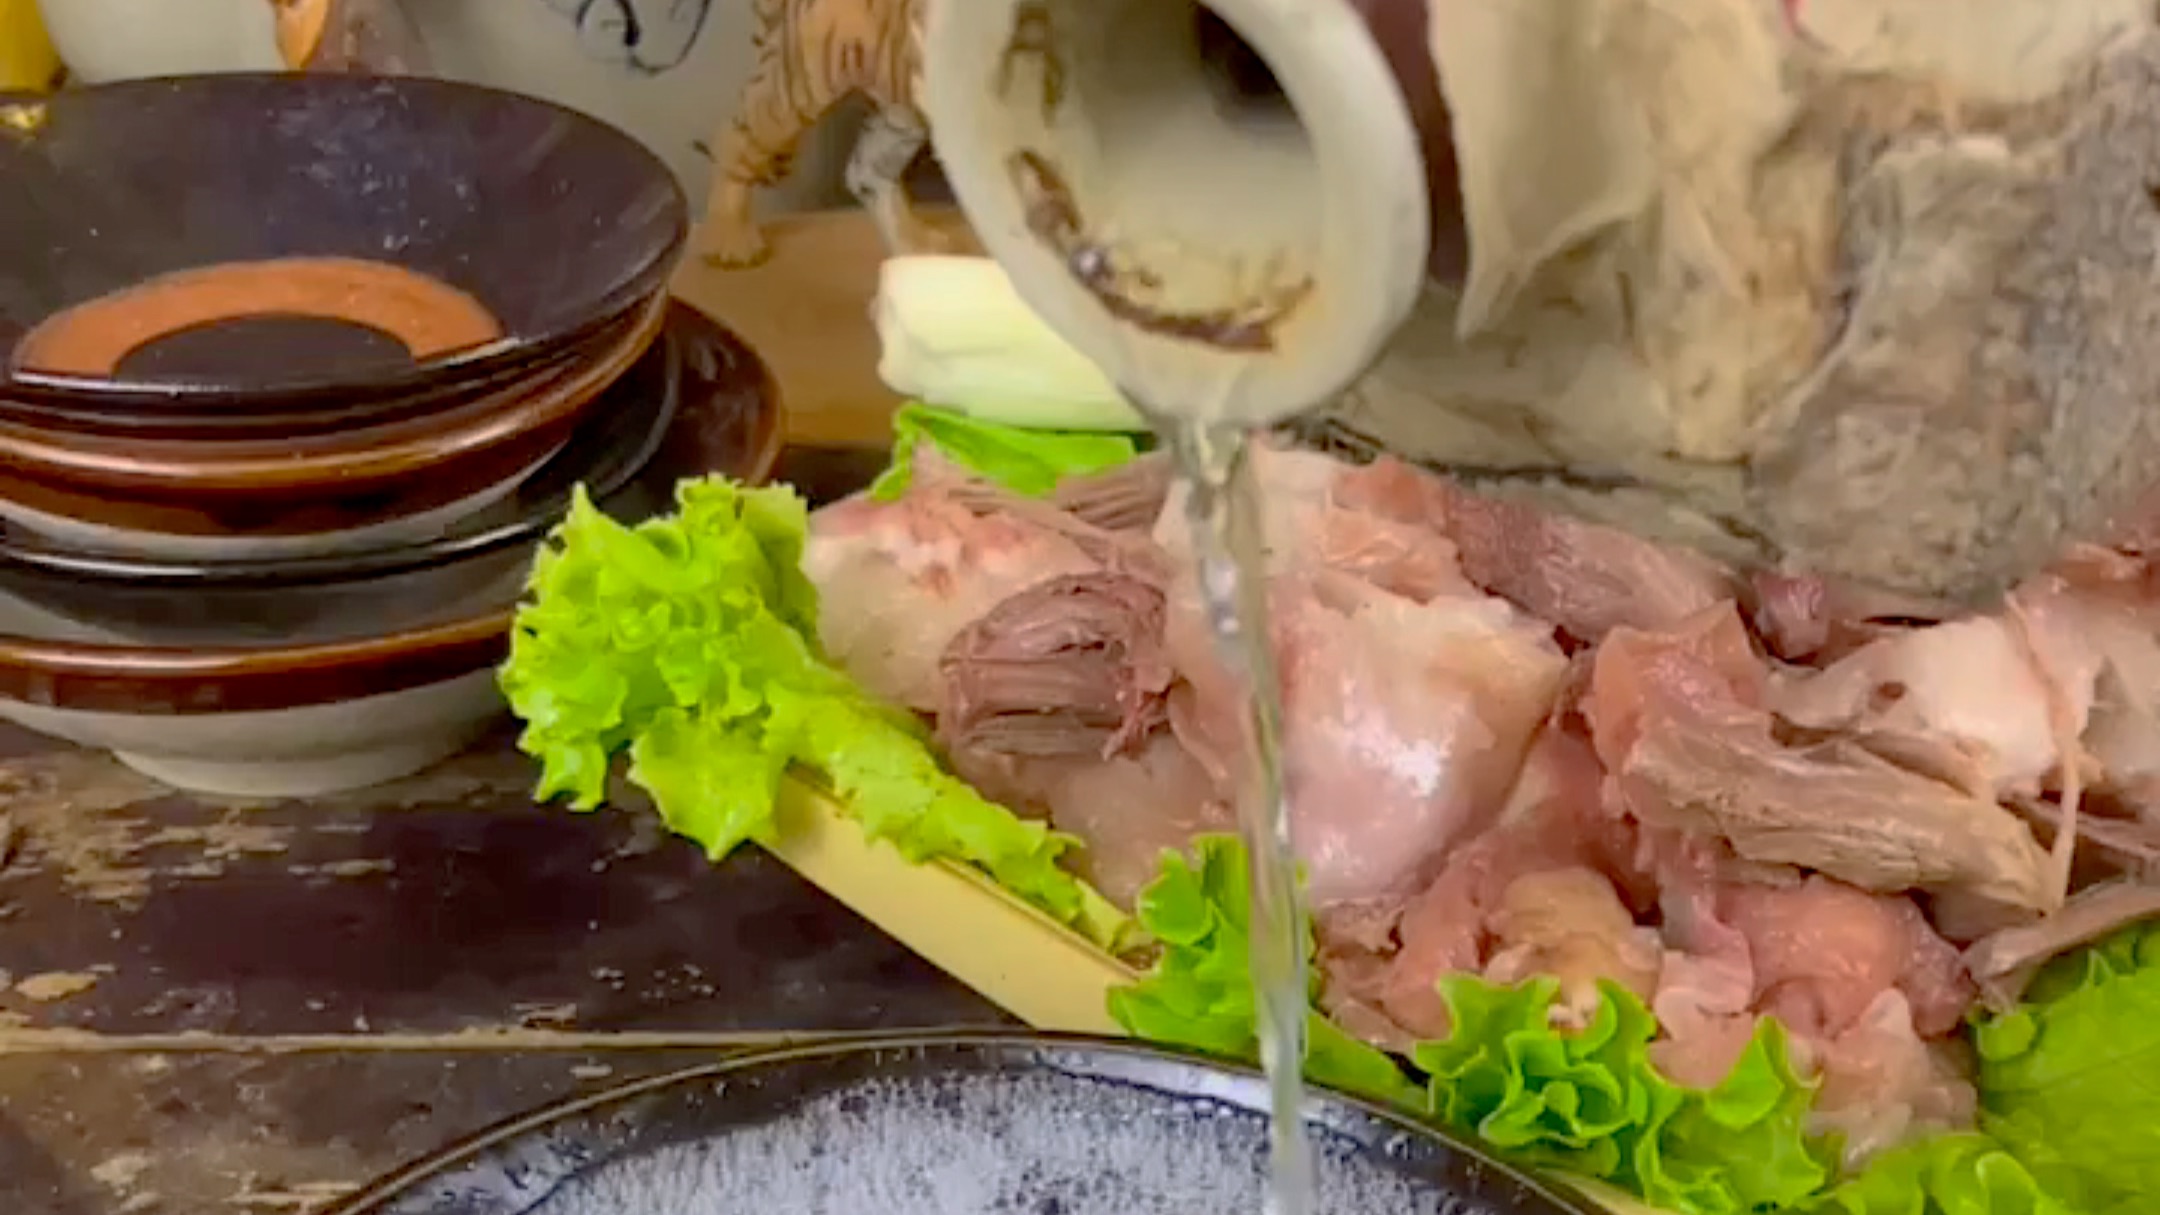 下雨天吃涮锅，涮好的肉片狠狠裹满芝麻酱，大口吃肉就是解馋-君在西安-君在西安-哔哩哔哩视频